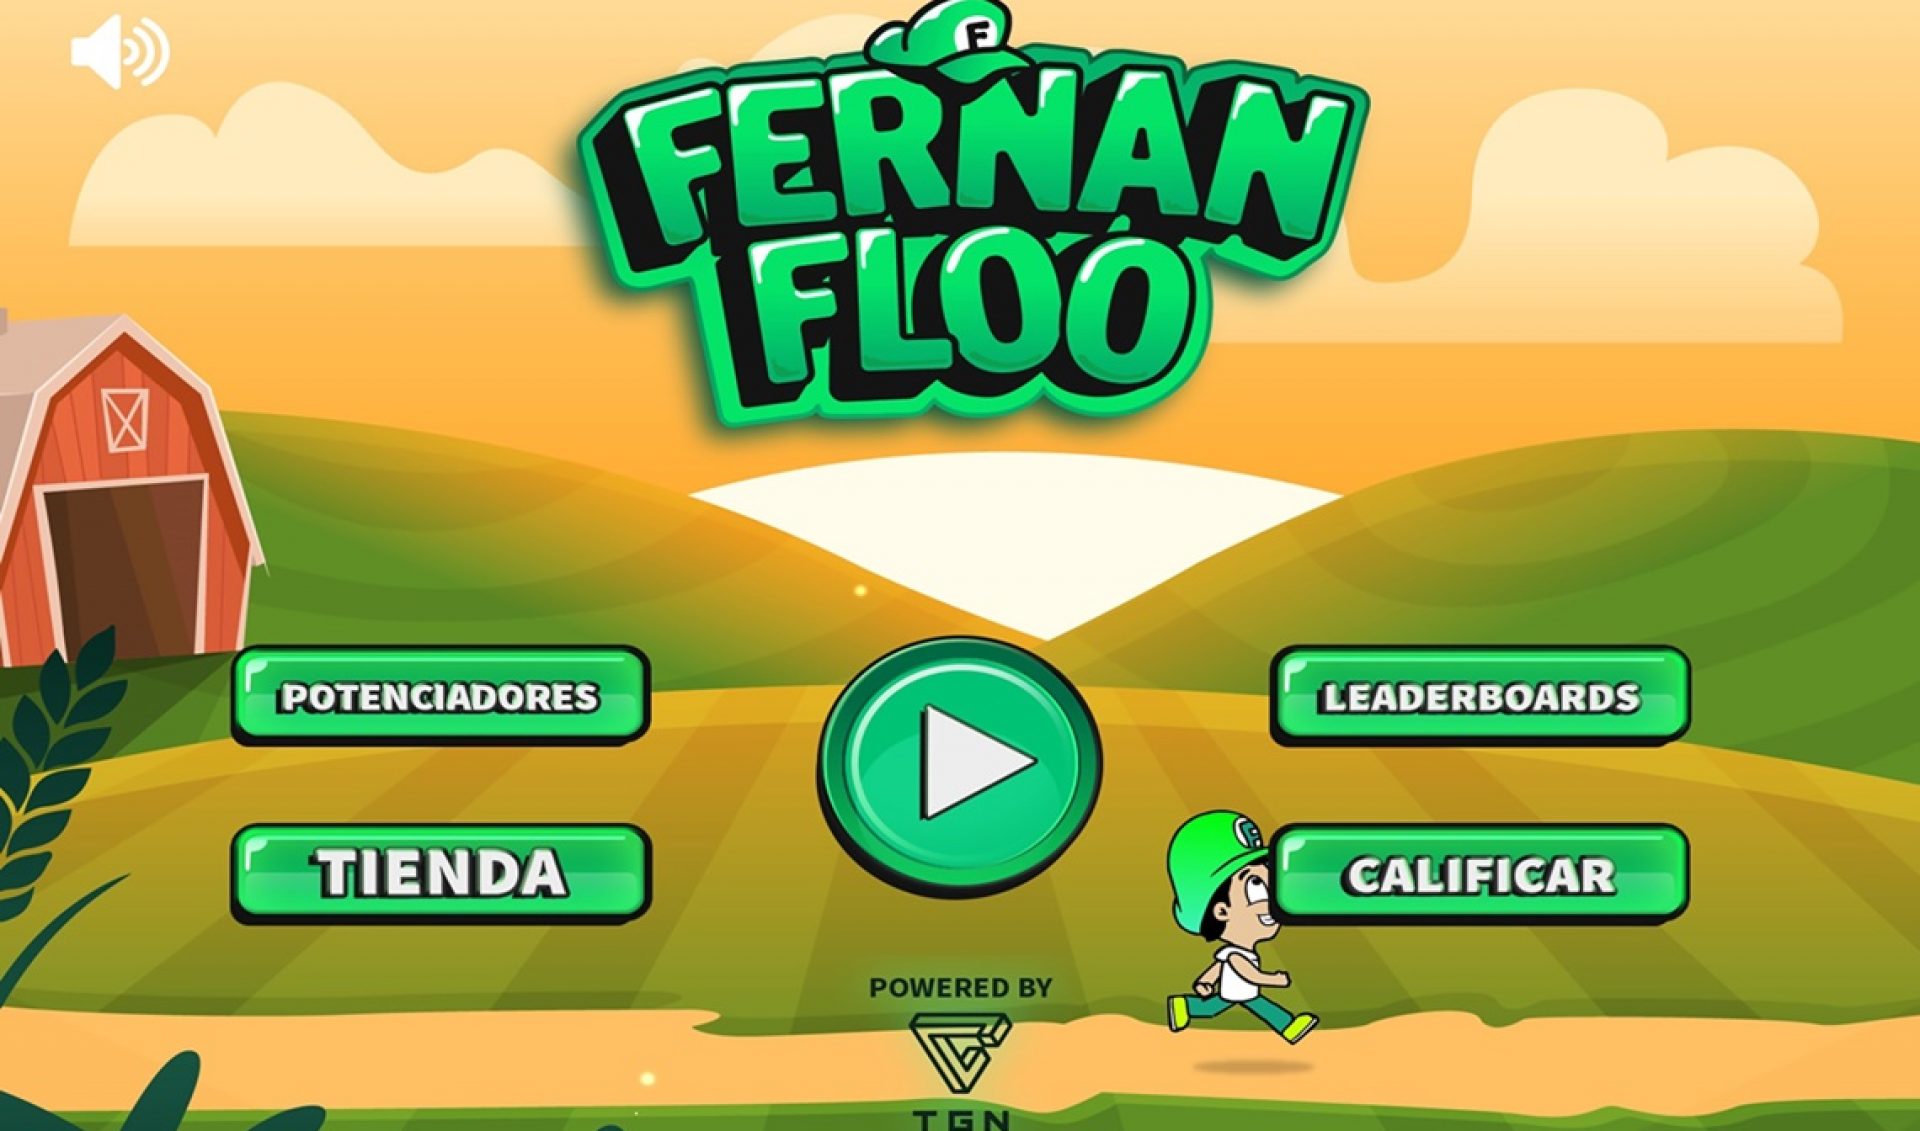 New App From YouTube Star Fernanfloo Gets 2.3 Million Downloads In A Week